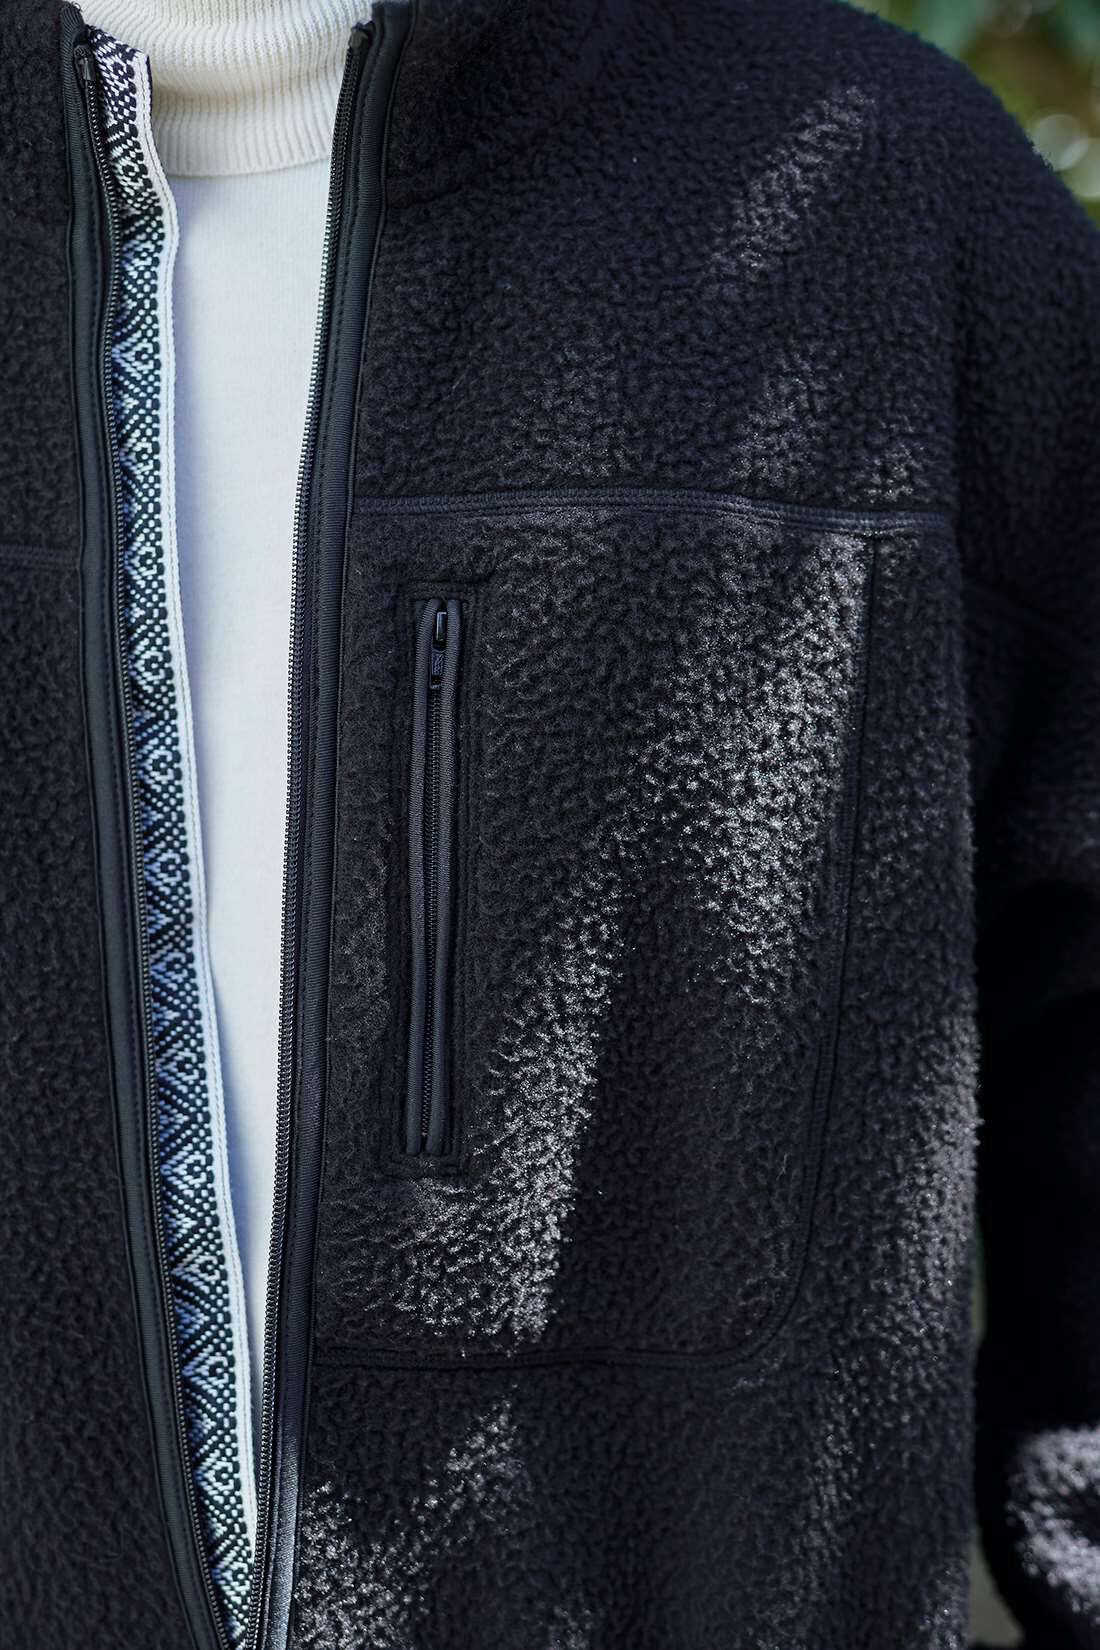 サニークラウズ|サニークラウズ　コタツフリースジャケット〈メンズ〉|黒一色のあったかコタツフリースに、ちらりと見え隠れするチロリアンテープがポイント。